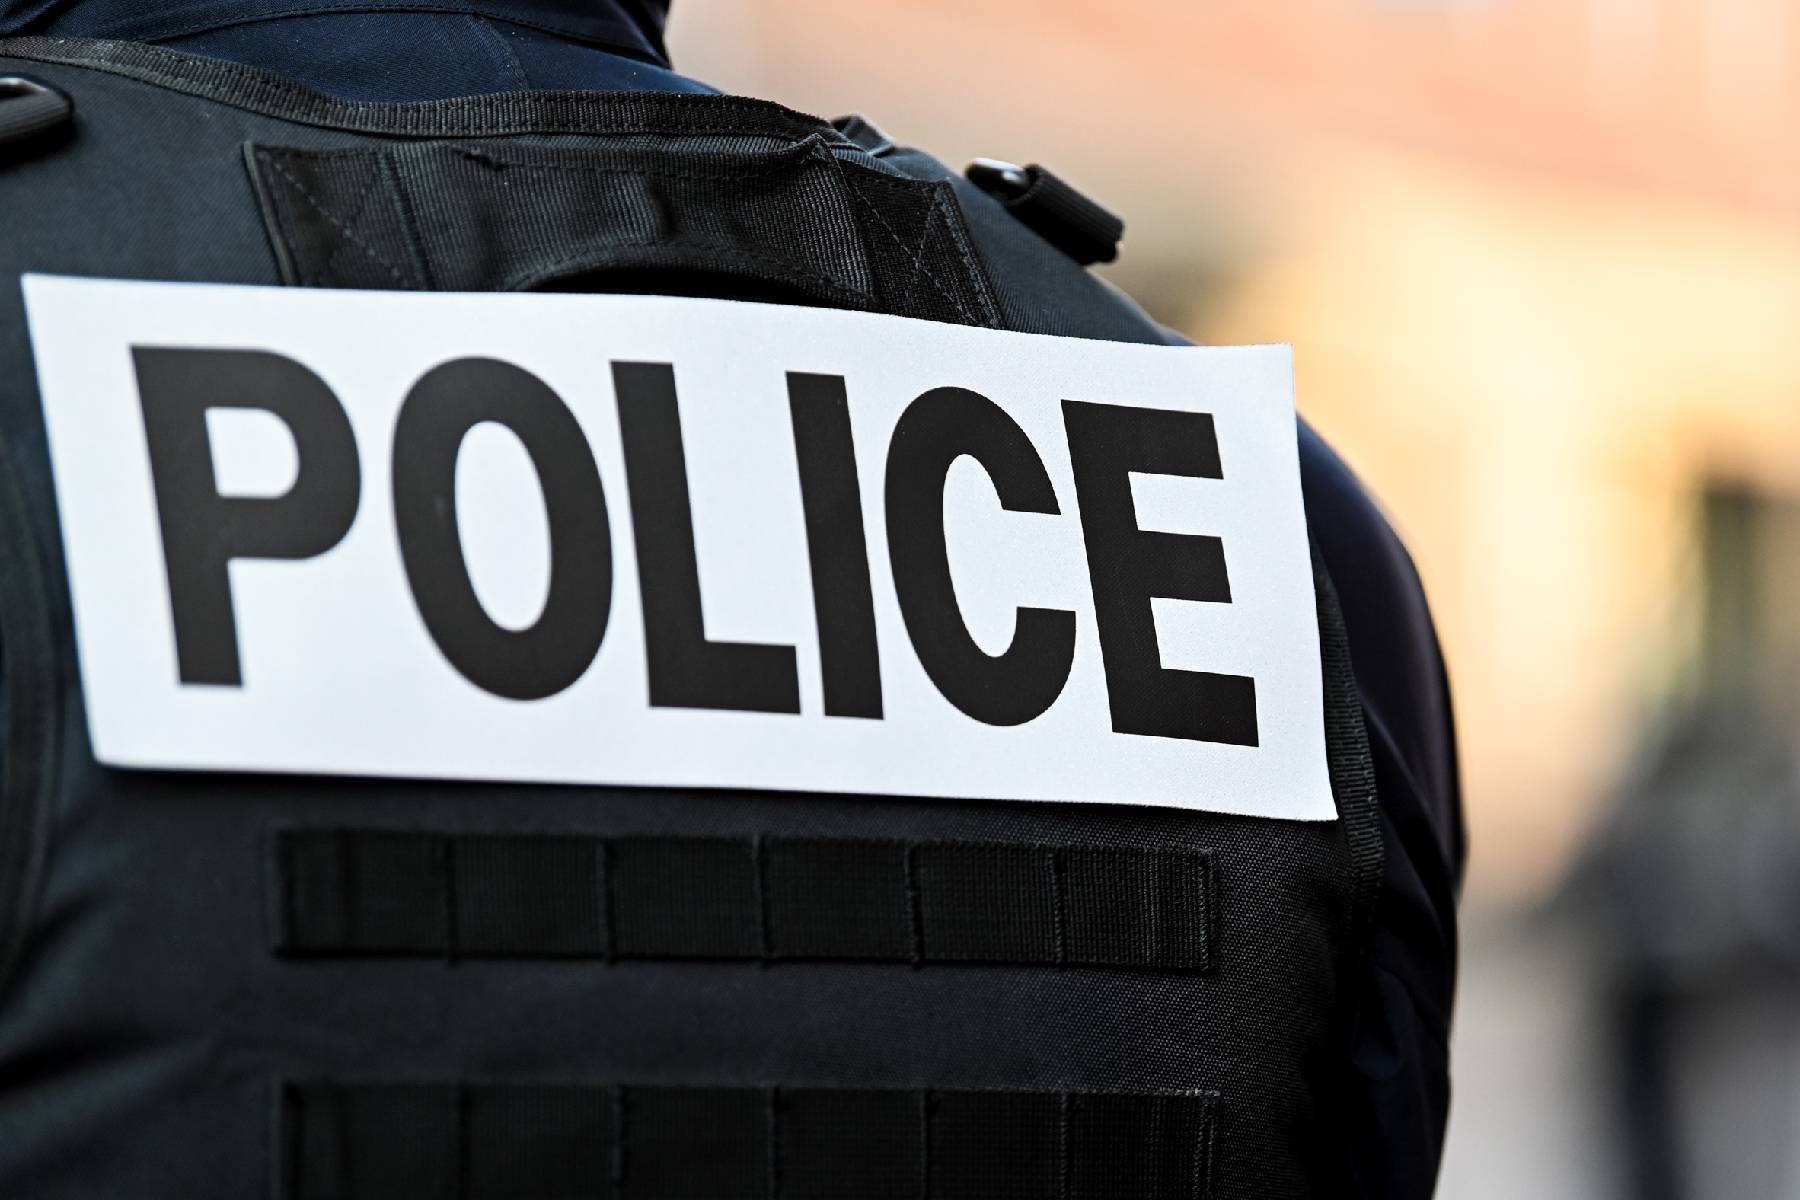 Besançon: un homme tué par arme à feu, un suspect en garde à vue